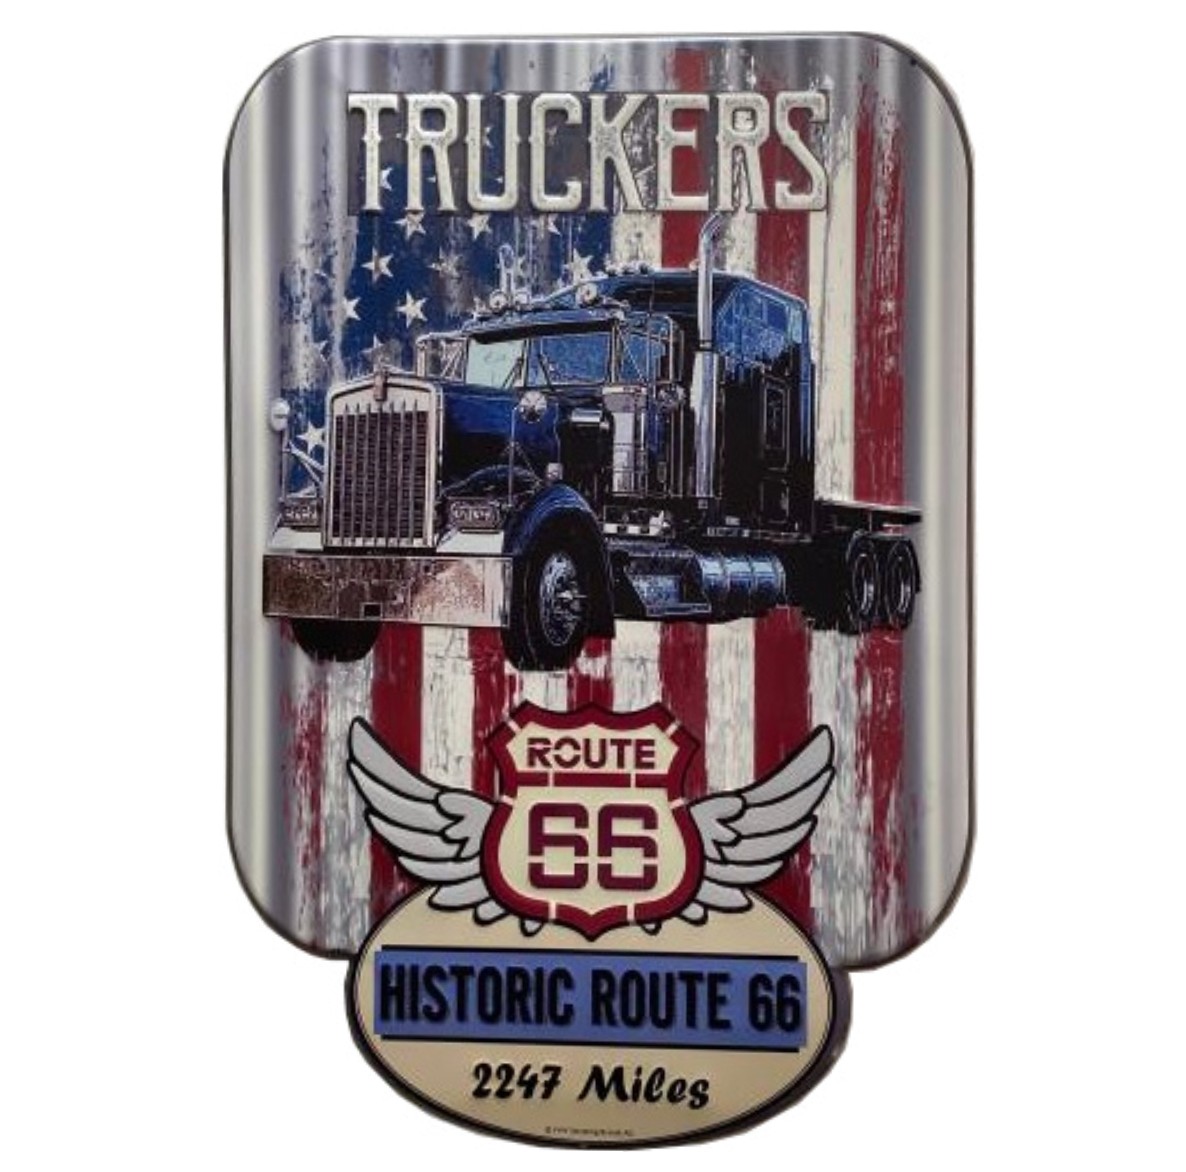 I&S-RXLD012-plaque-decoupé-laser-relief-métallique-americaine-mural-décoration-legend-historic-Route-66-legend-american-truckers-vintage